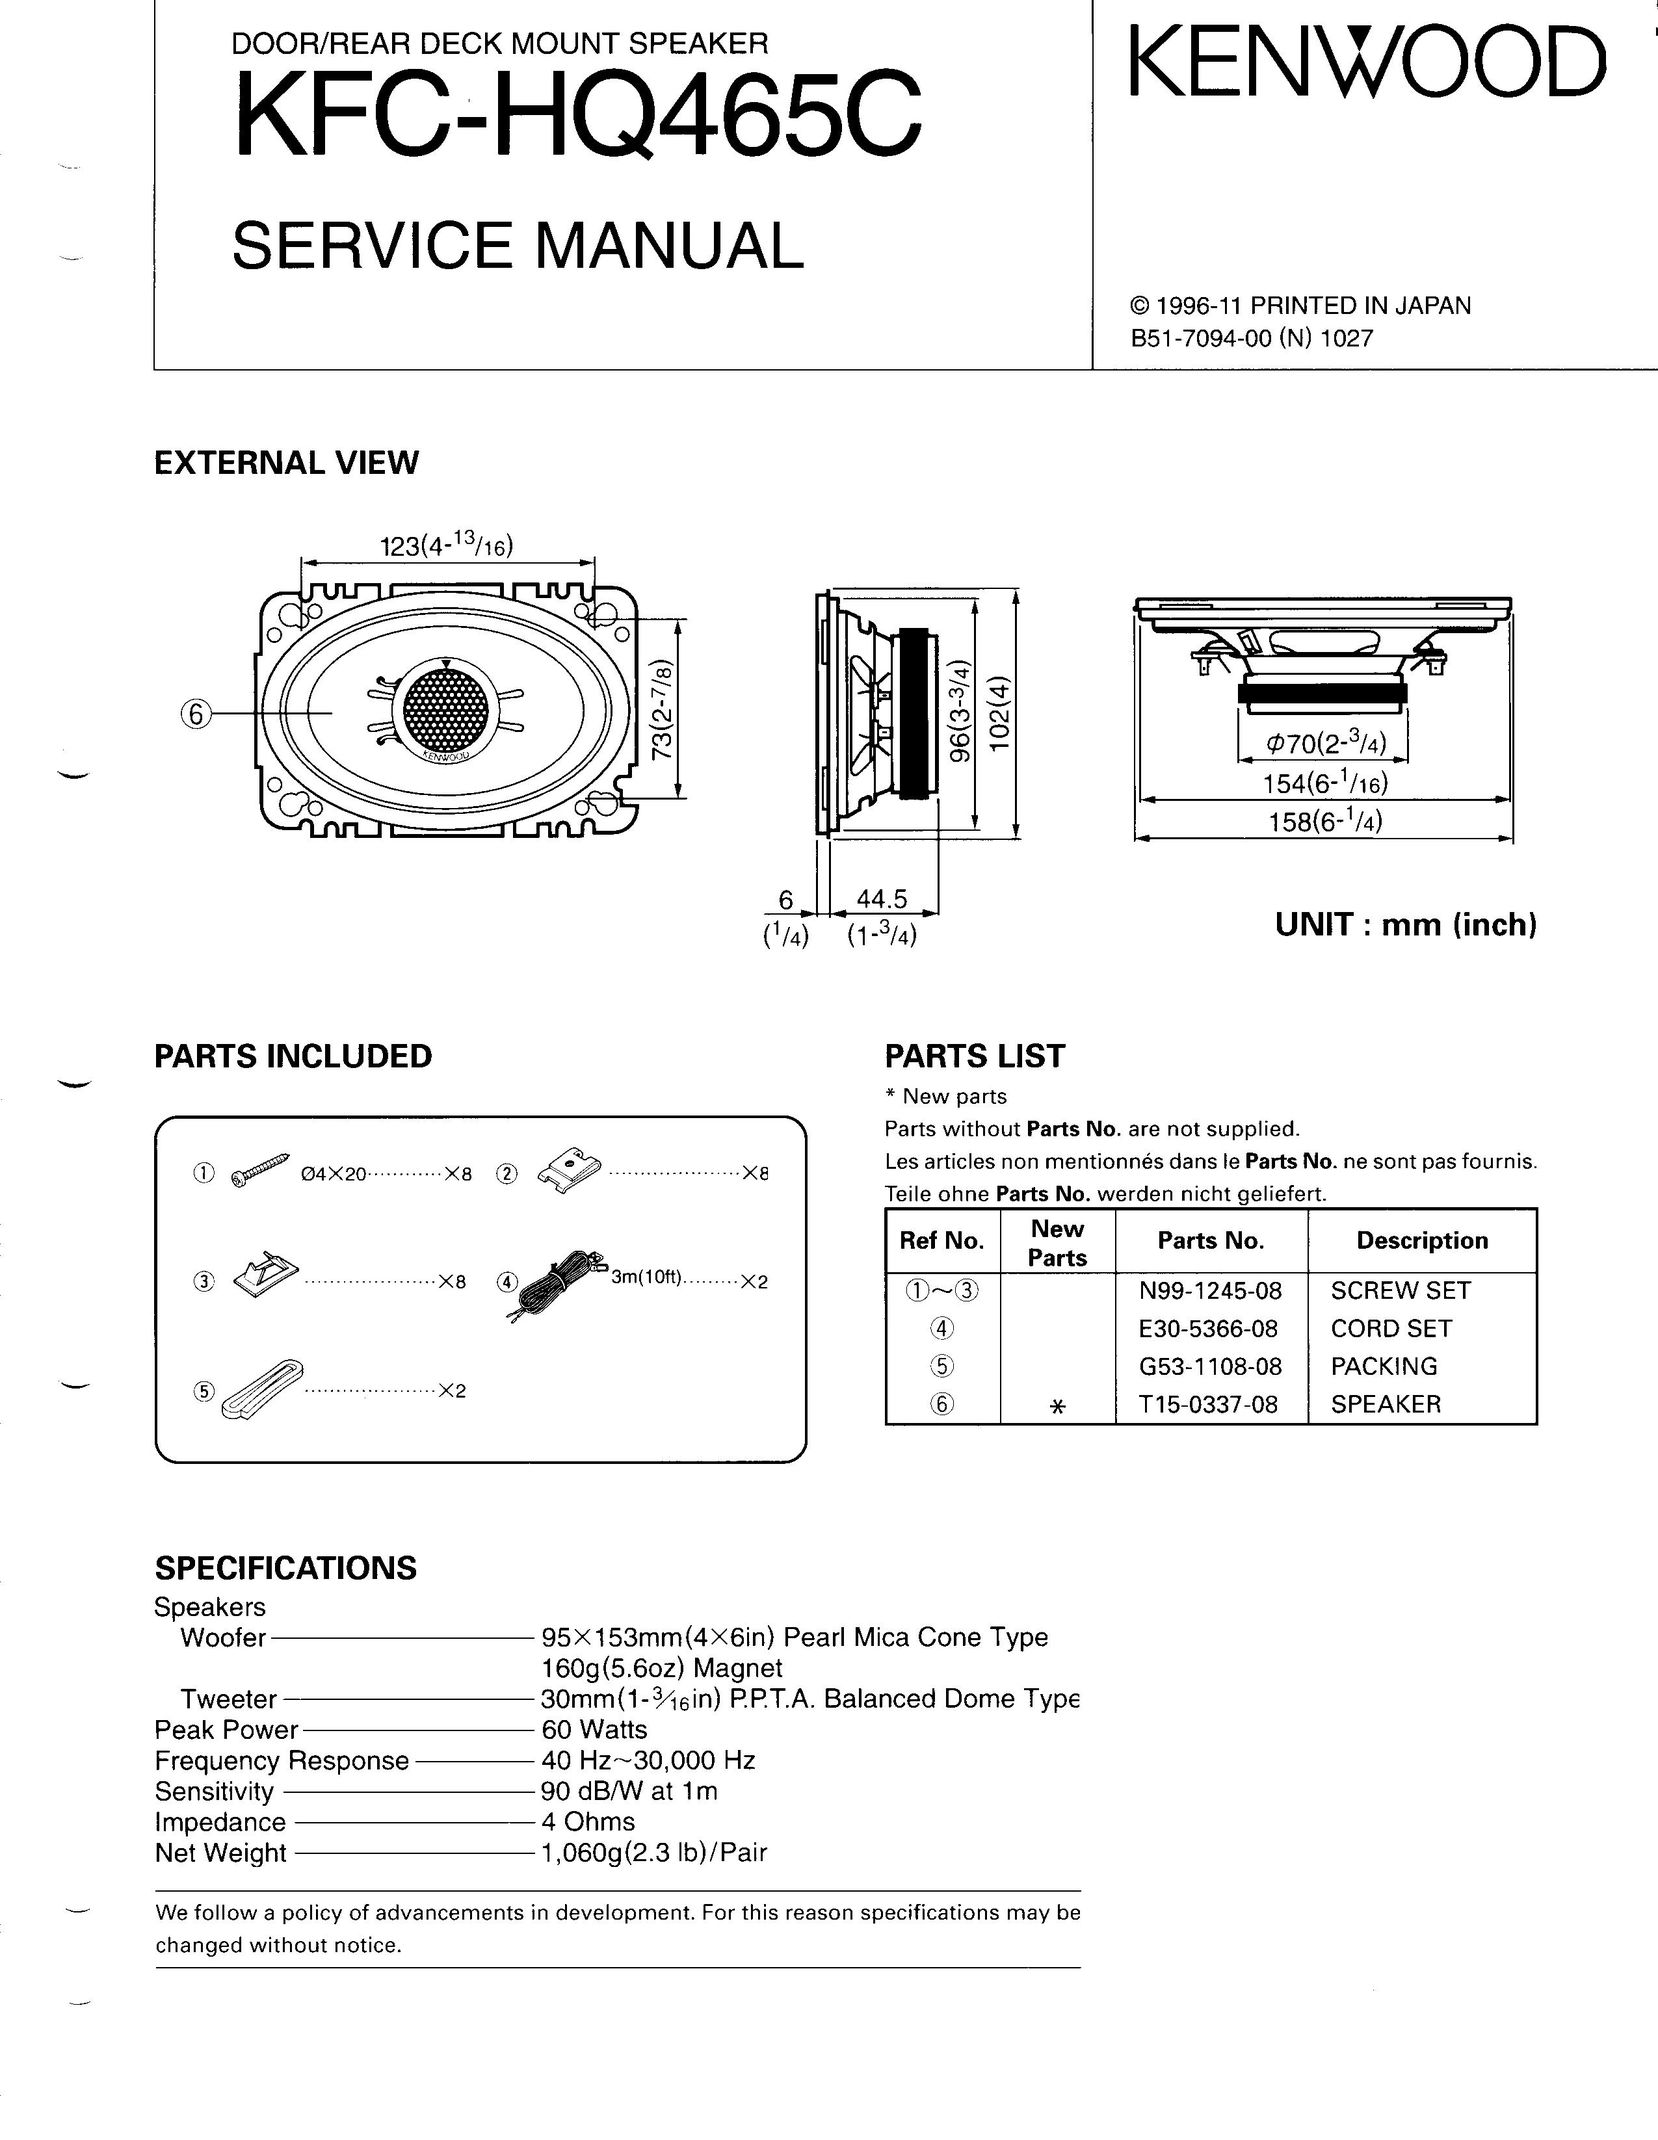 Kenwood KFC-HQ465C Car Speaker User Manual